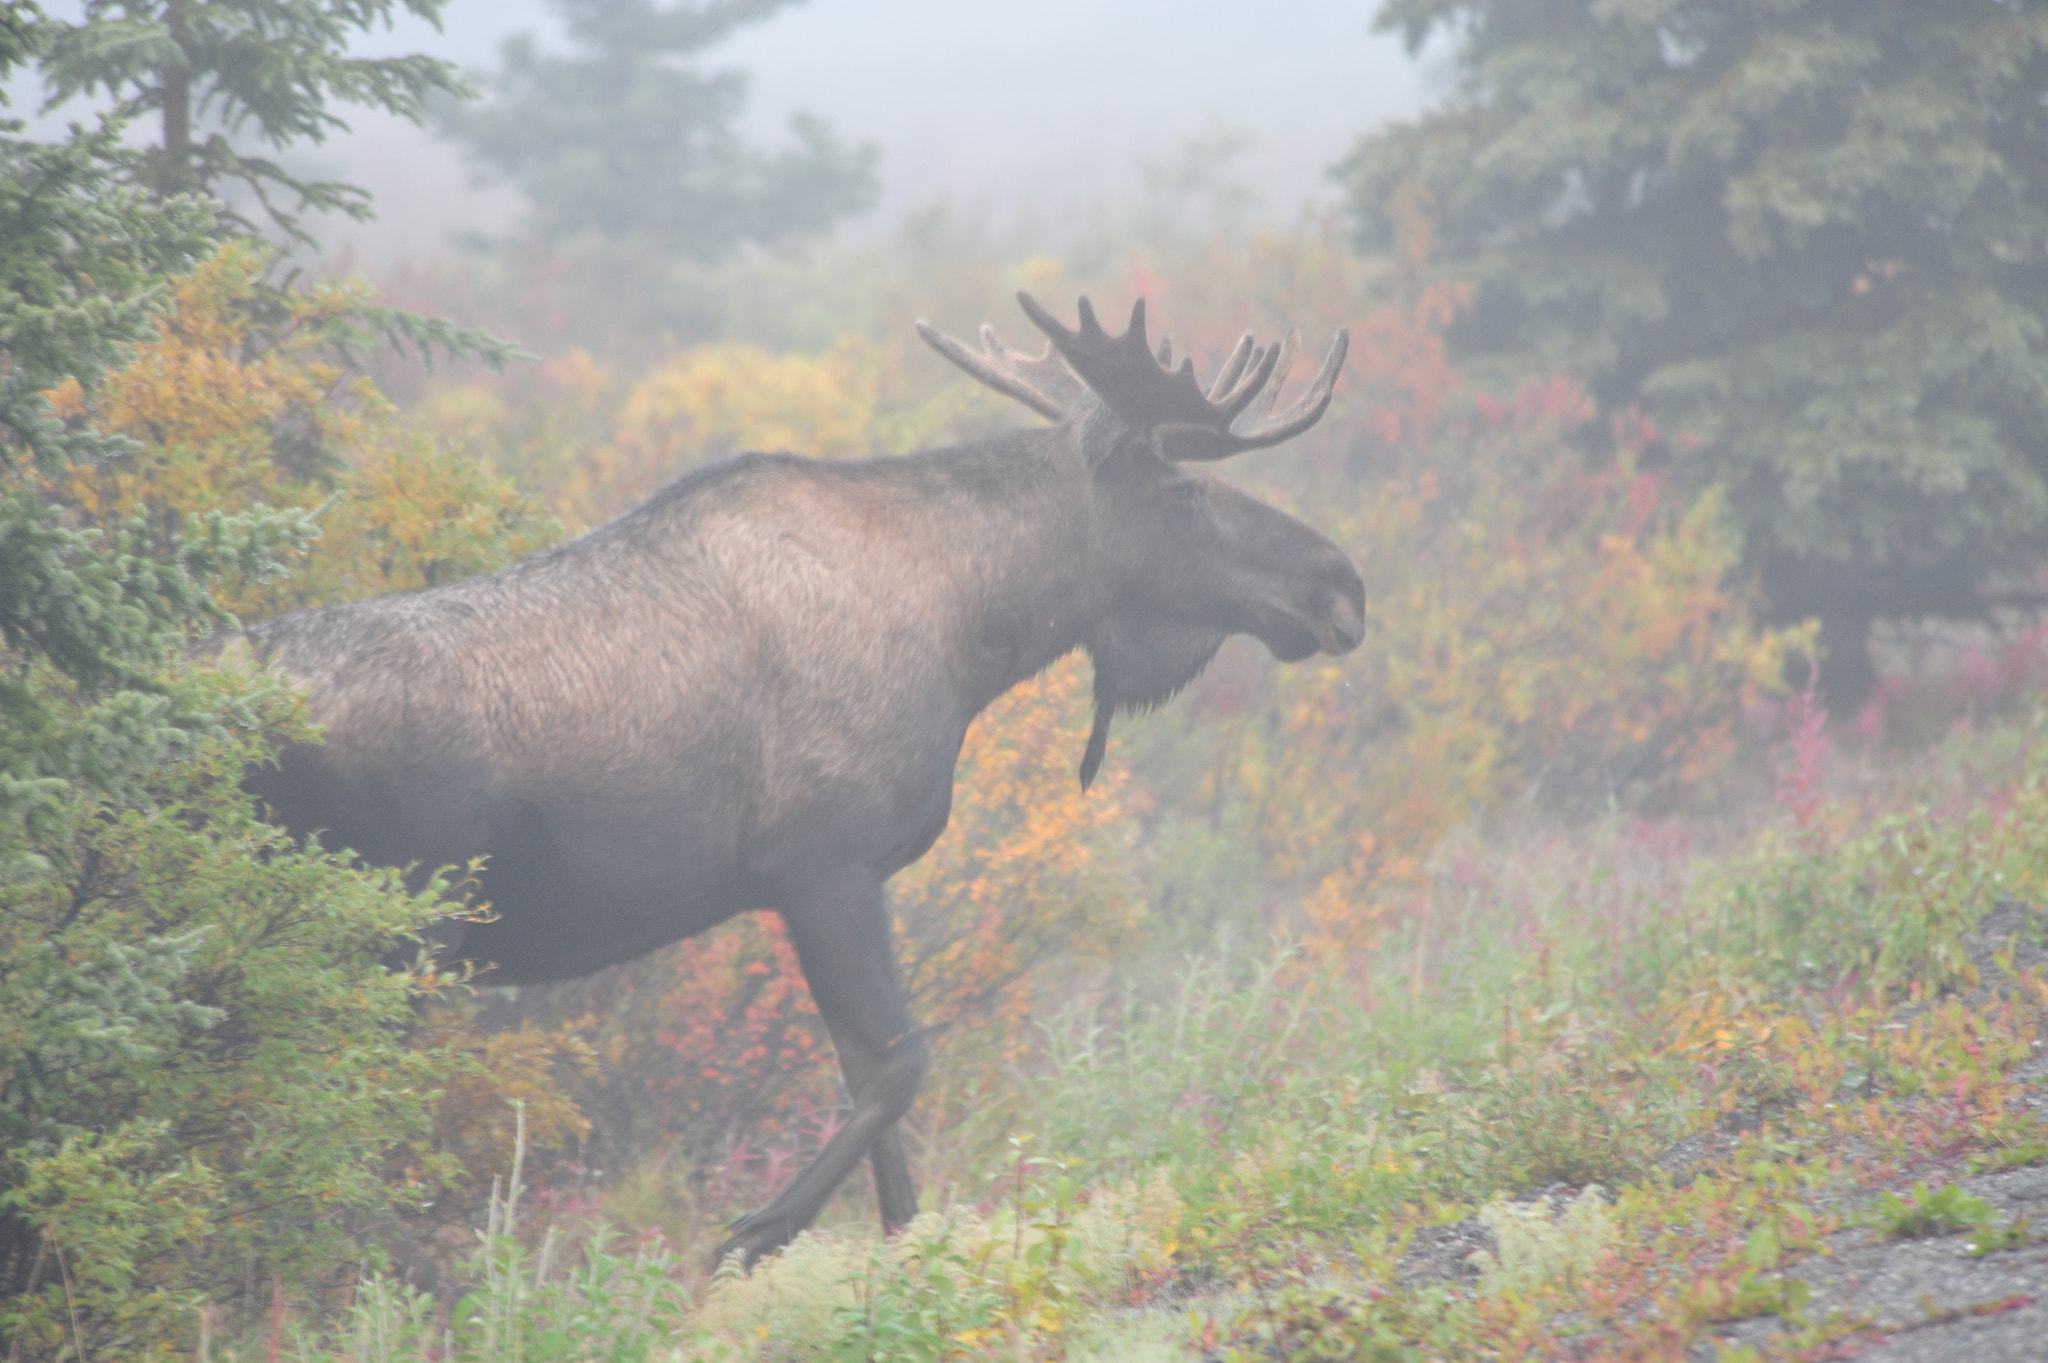 Nikon AF Nikkor 80-400mm F4.5-5.6D ED VR sample photo. Misty fall color & bull moose photography